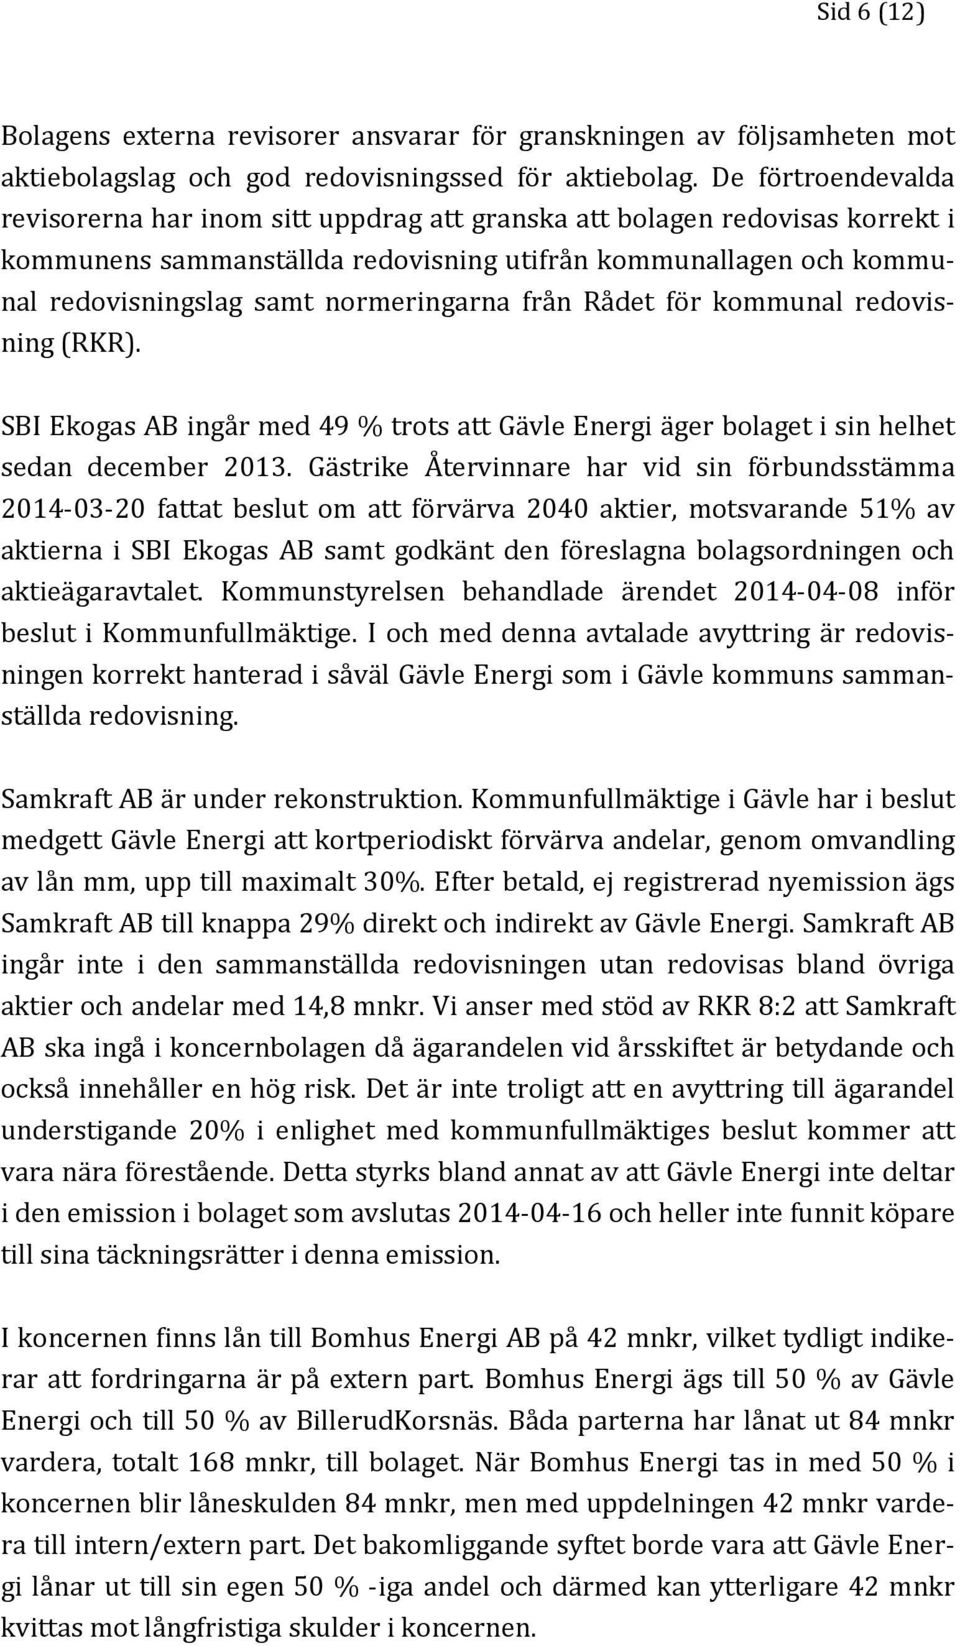 normeringarna från Rådet för kommunal redovisning (RKR). SBI Ekogas AB ingår med 49 % trots att Gävle Energi äger bolaget i sin helhet sedan december 2013.